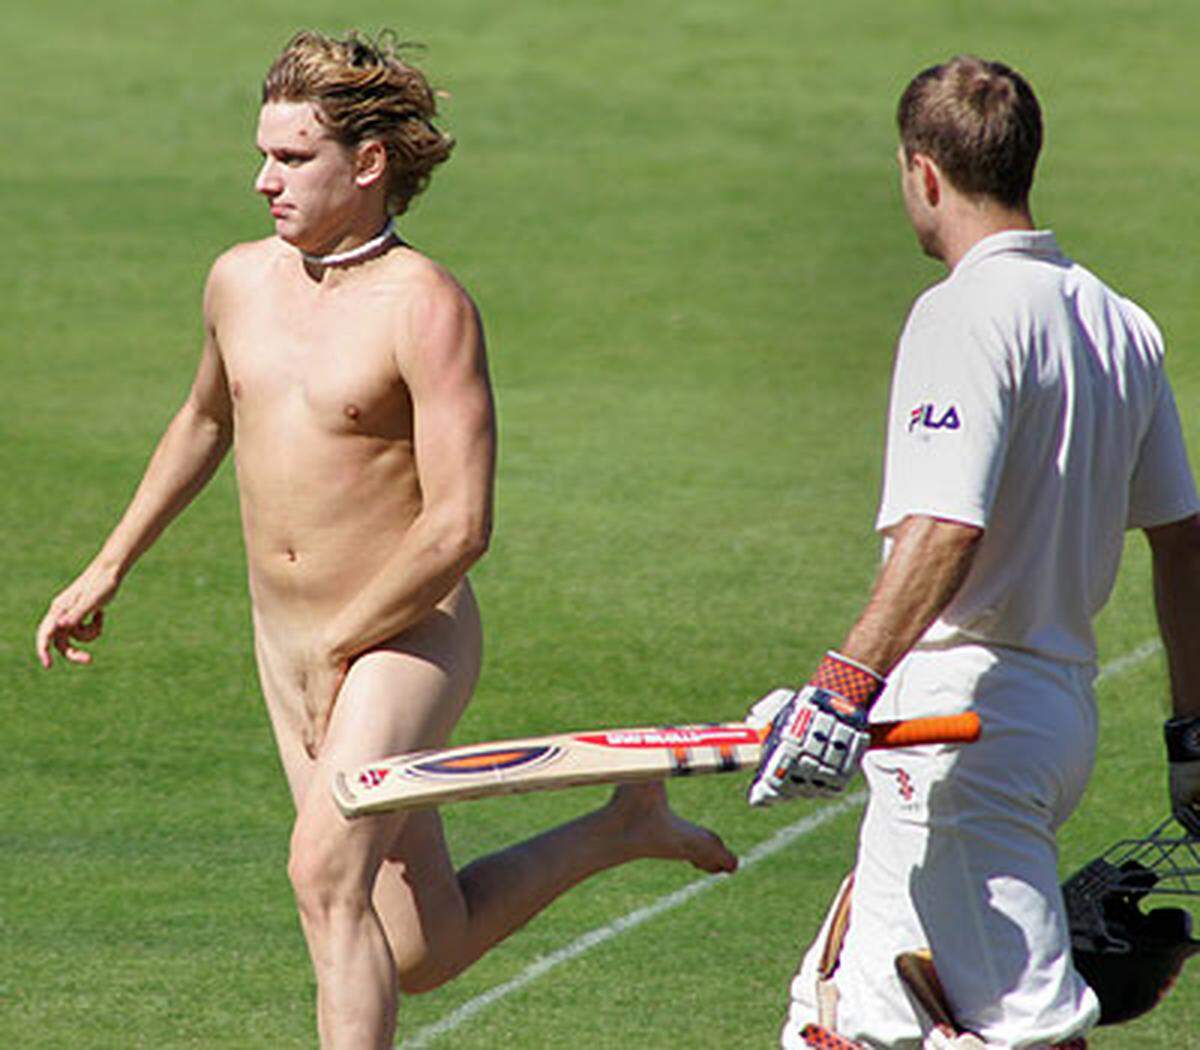 Leicht verwundert: Der Australische Cricketspieler Katich im Spiel gegen Neuseeland beim Anblick des bloden Jünglings.